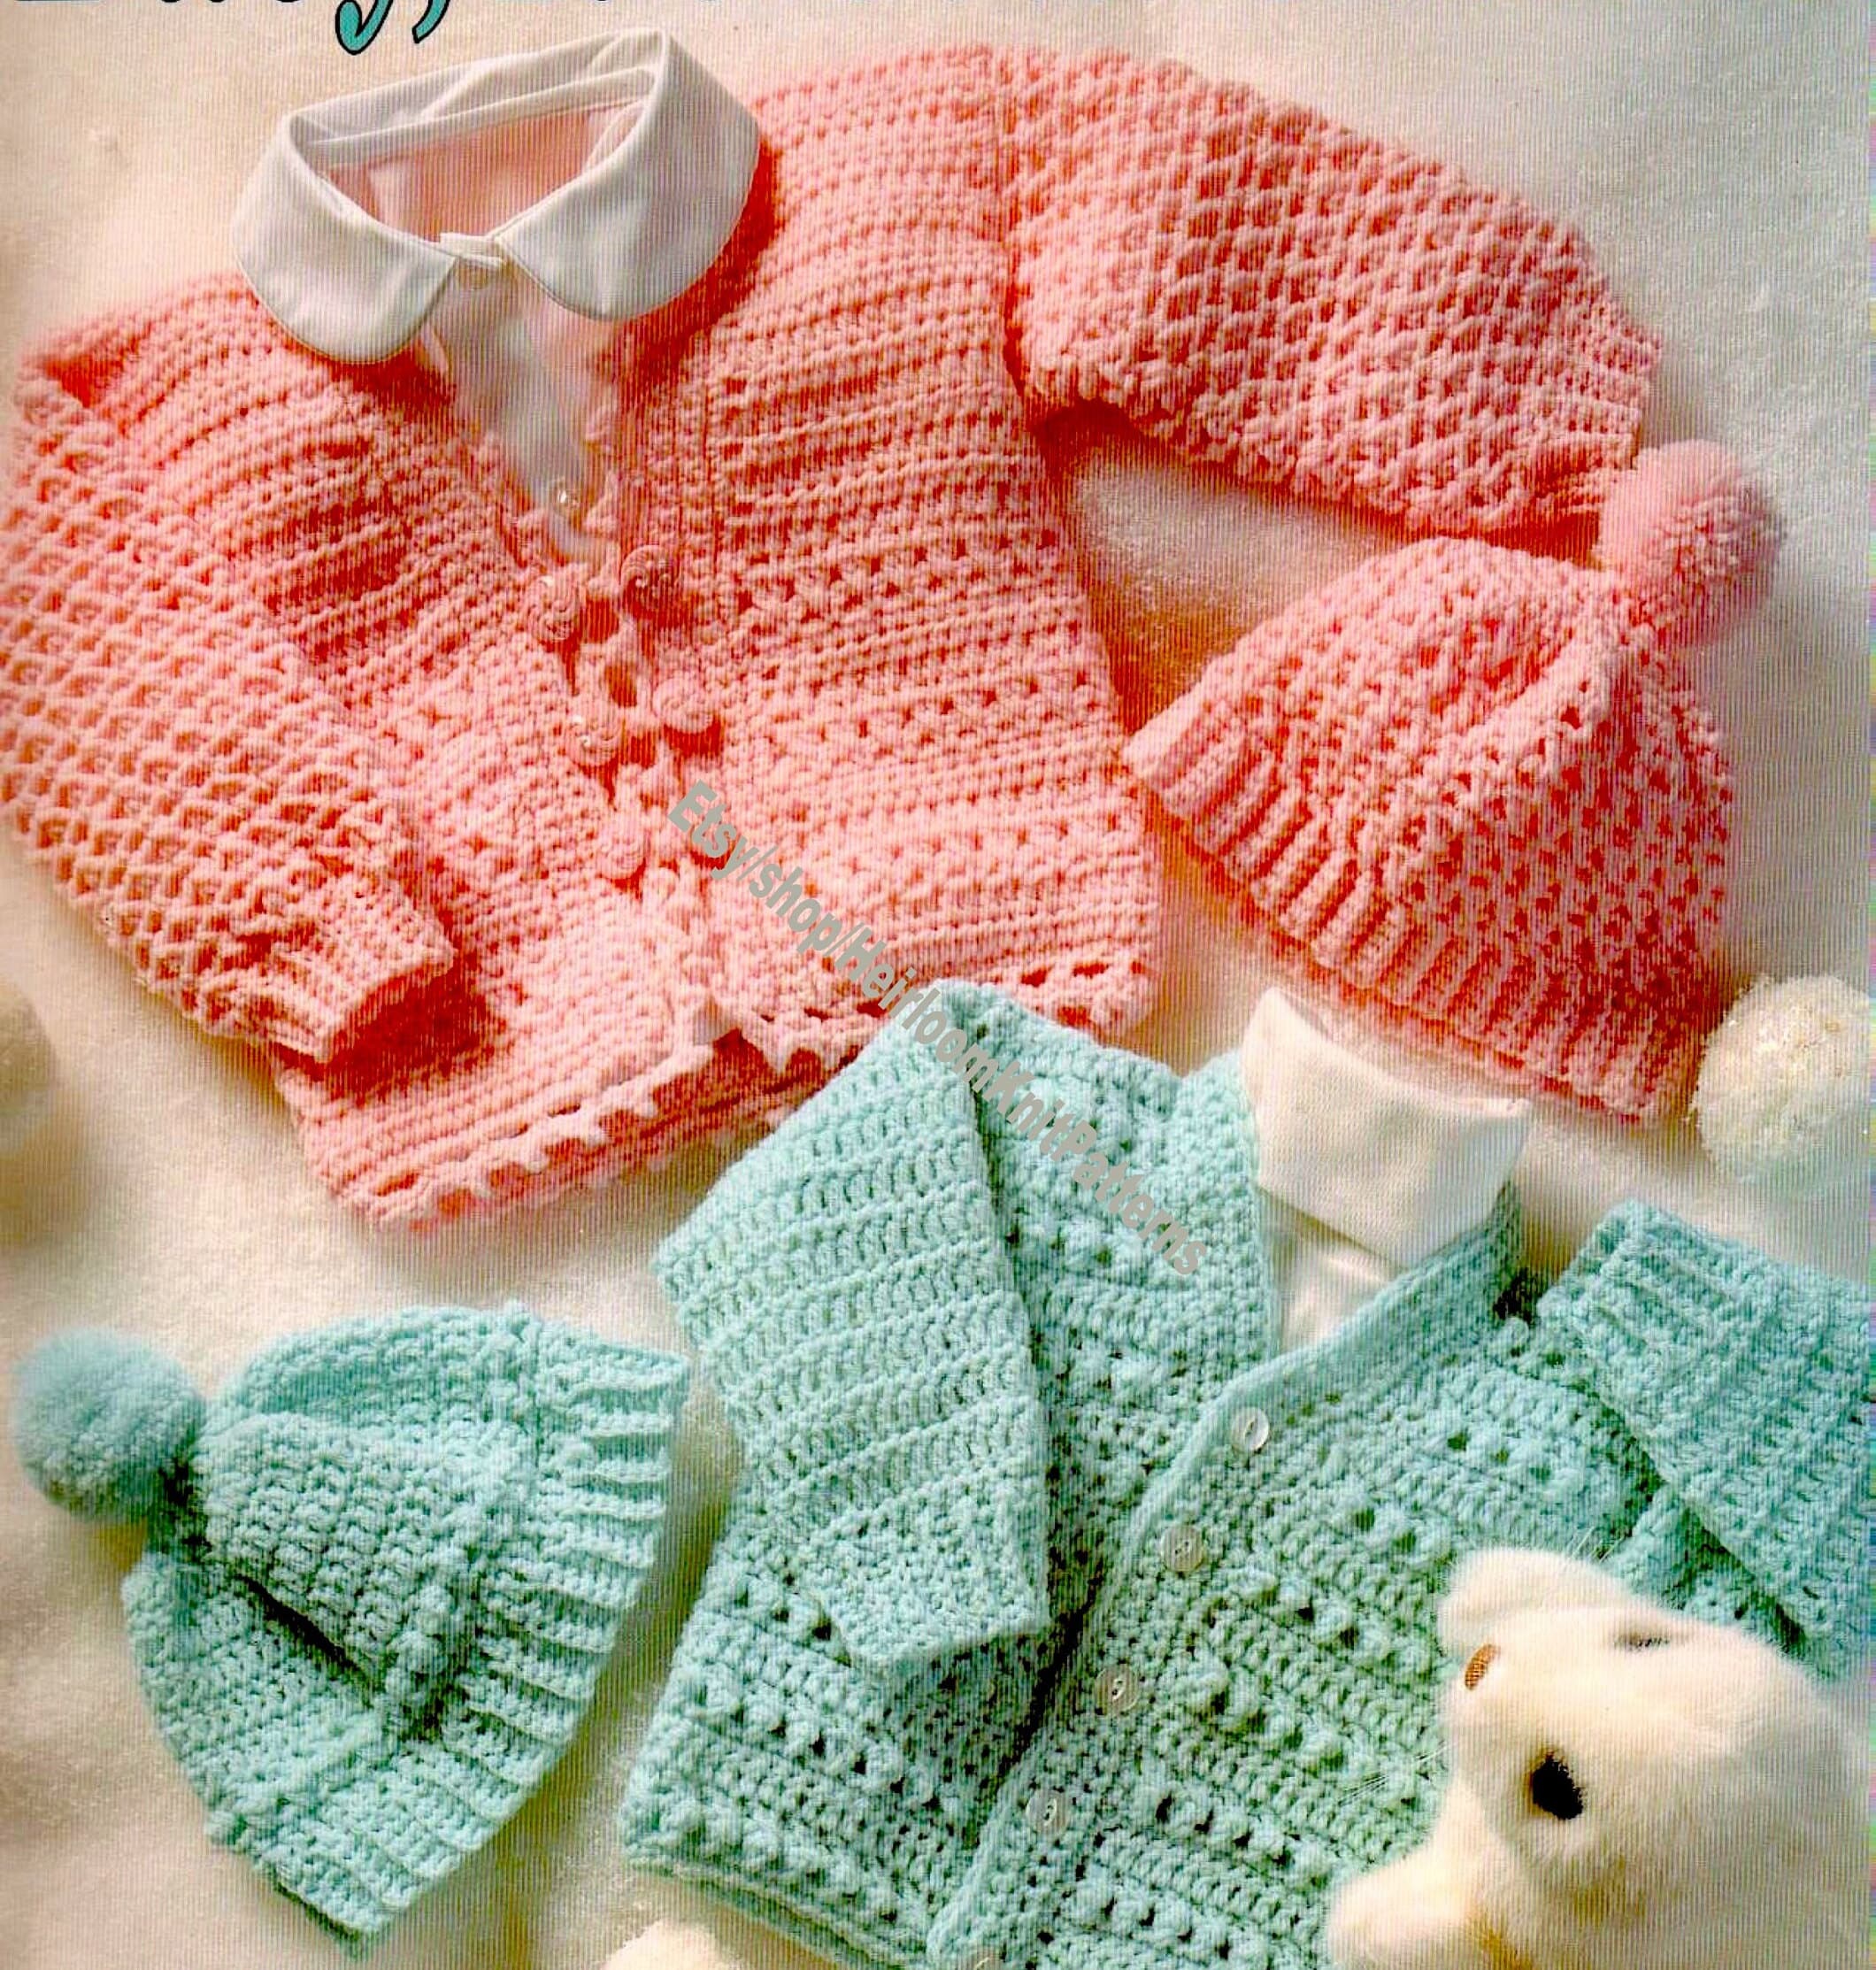 Enfant en bas âge unisexe hiver Pom Pom bonnet chapeau écharpe gants  ensemble tricot chaud chapeau polaire cou chaud garçons filles 2-10 ans  gris